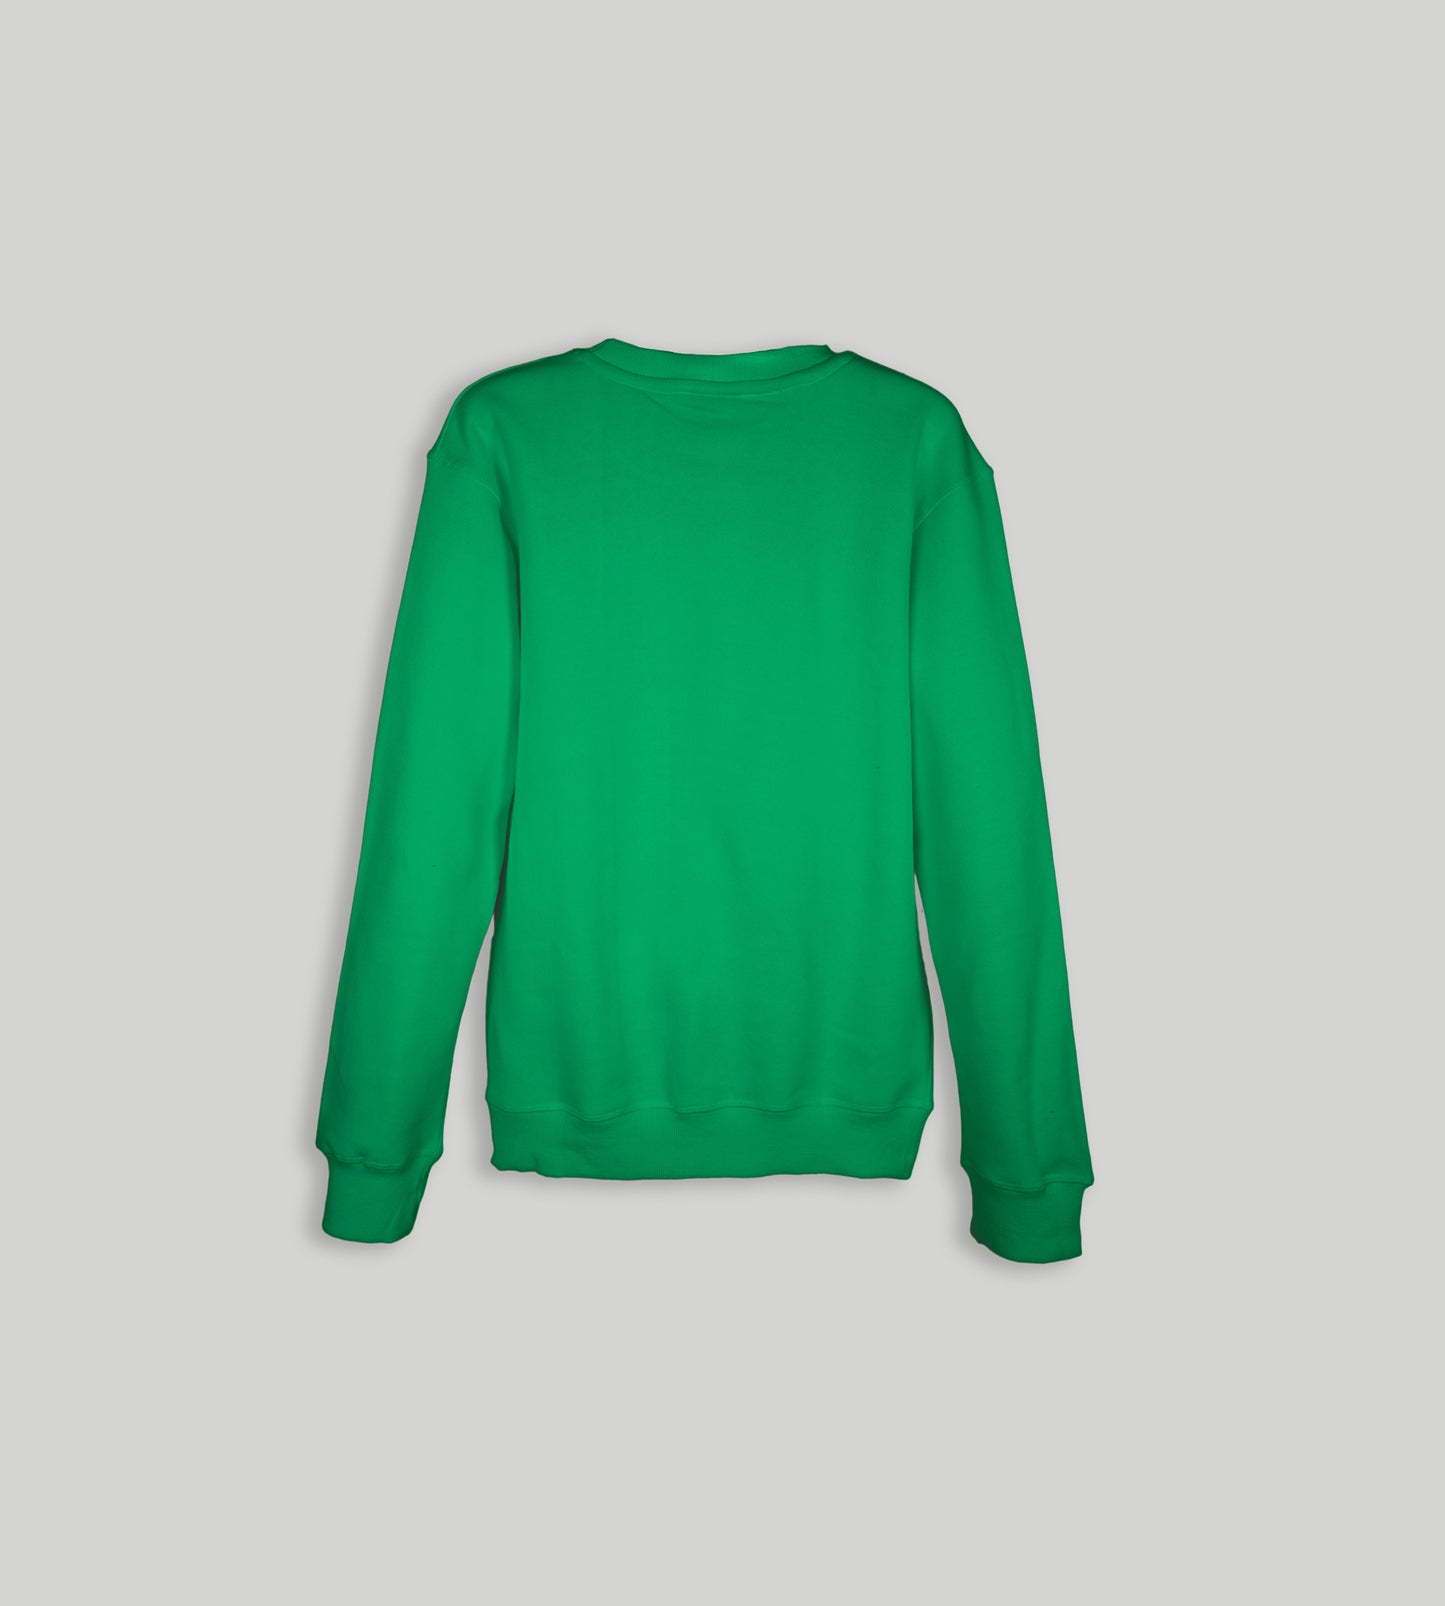 Get Cozy with Stylish Fleece Sweatshirts